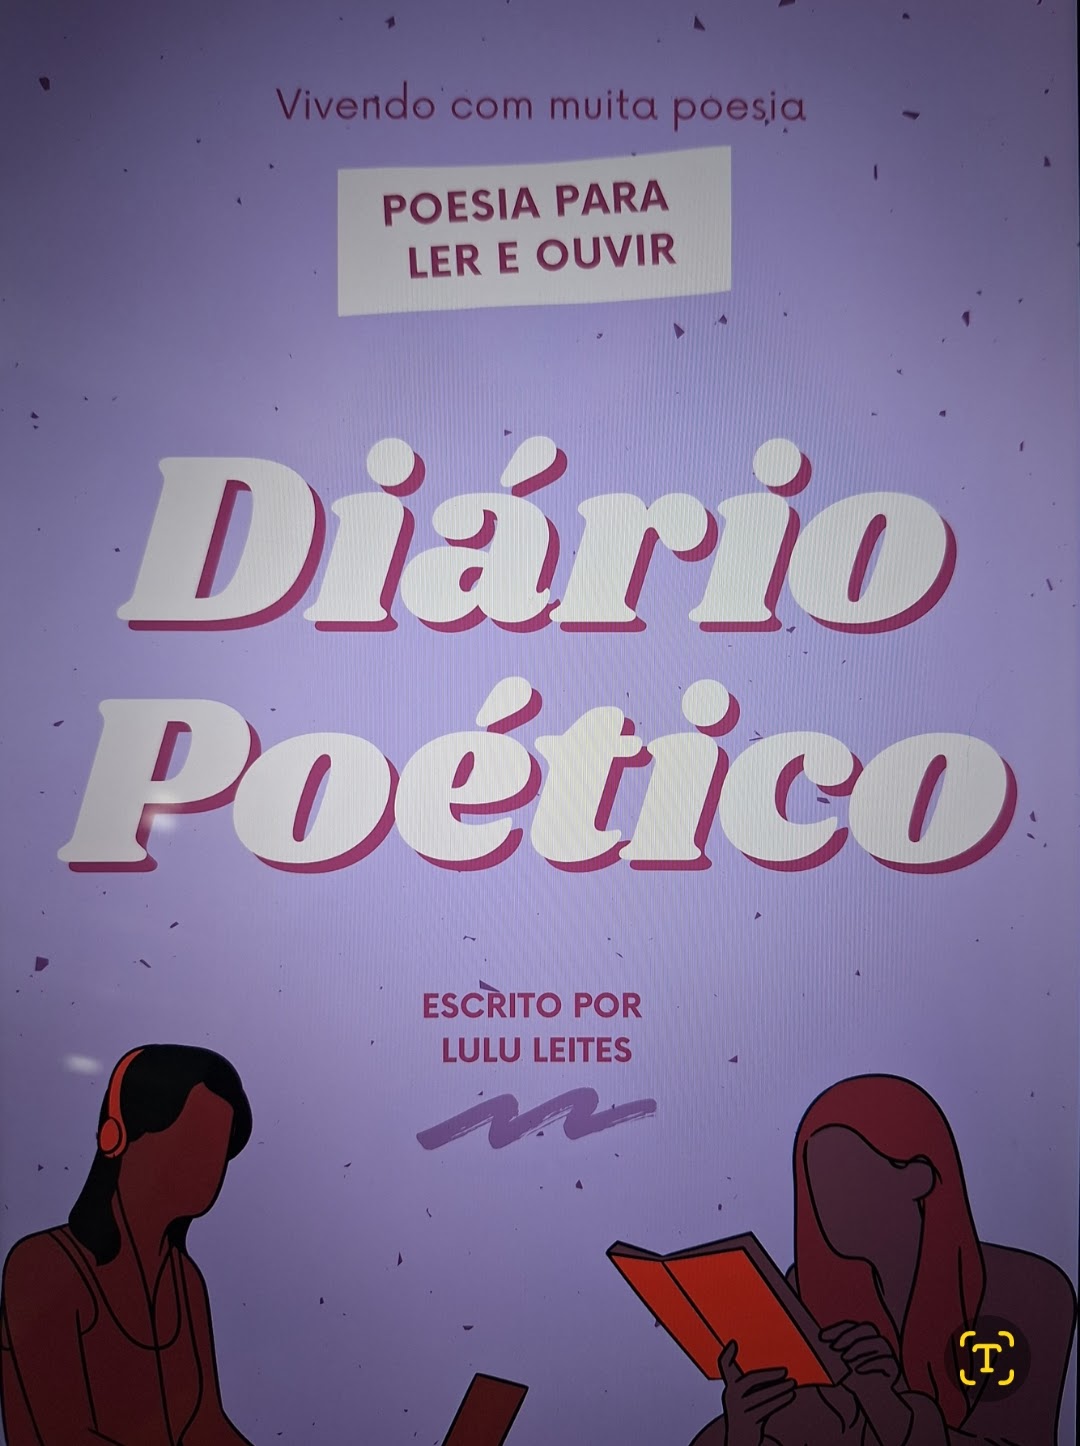 Capa do livro "Diário Poético" de Luana Leites, pela Editora Uiclap.